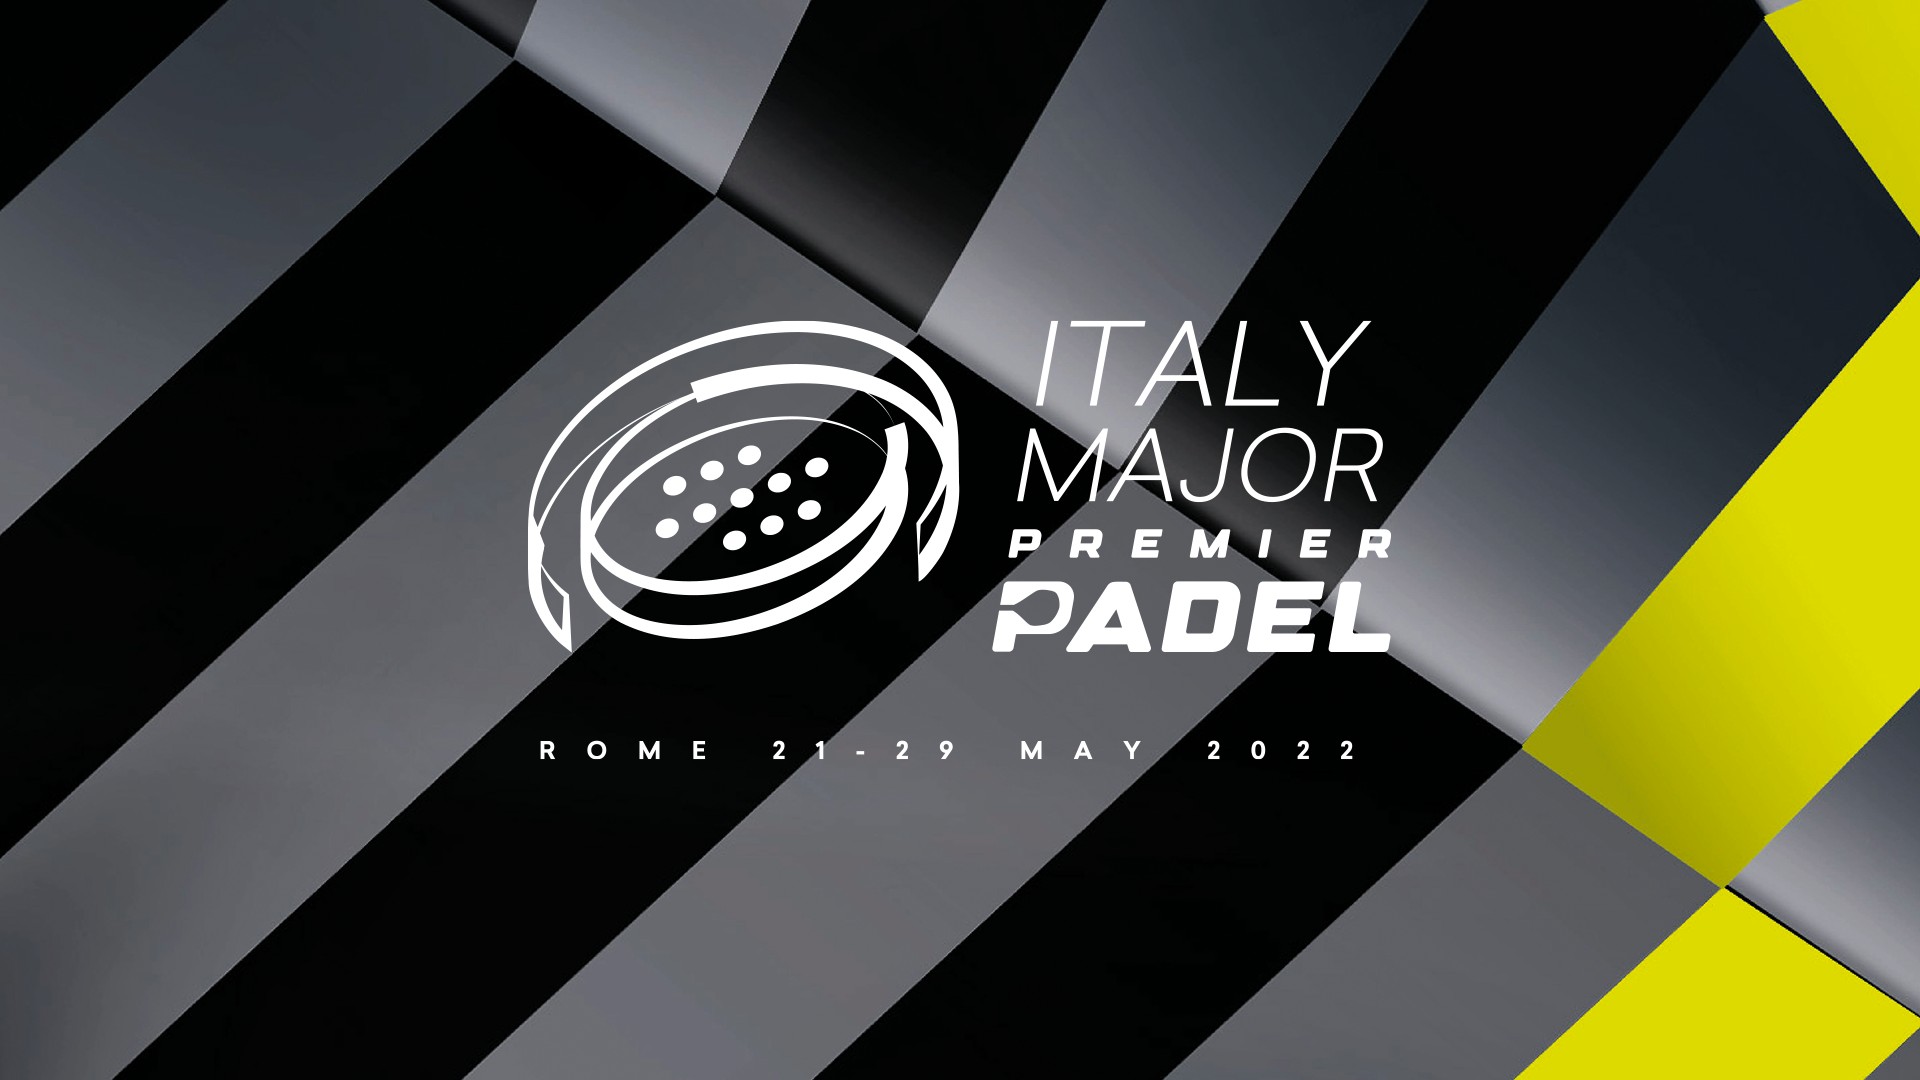 italiensk major premier padel logotyp